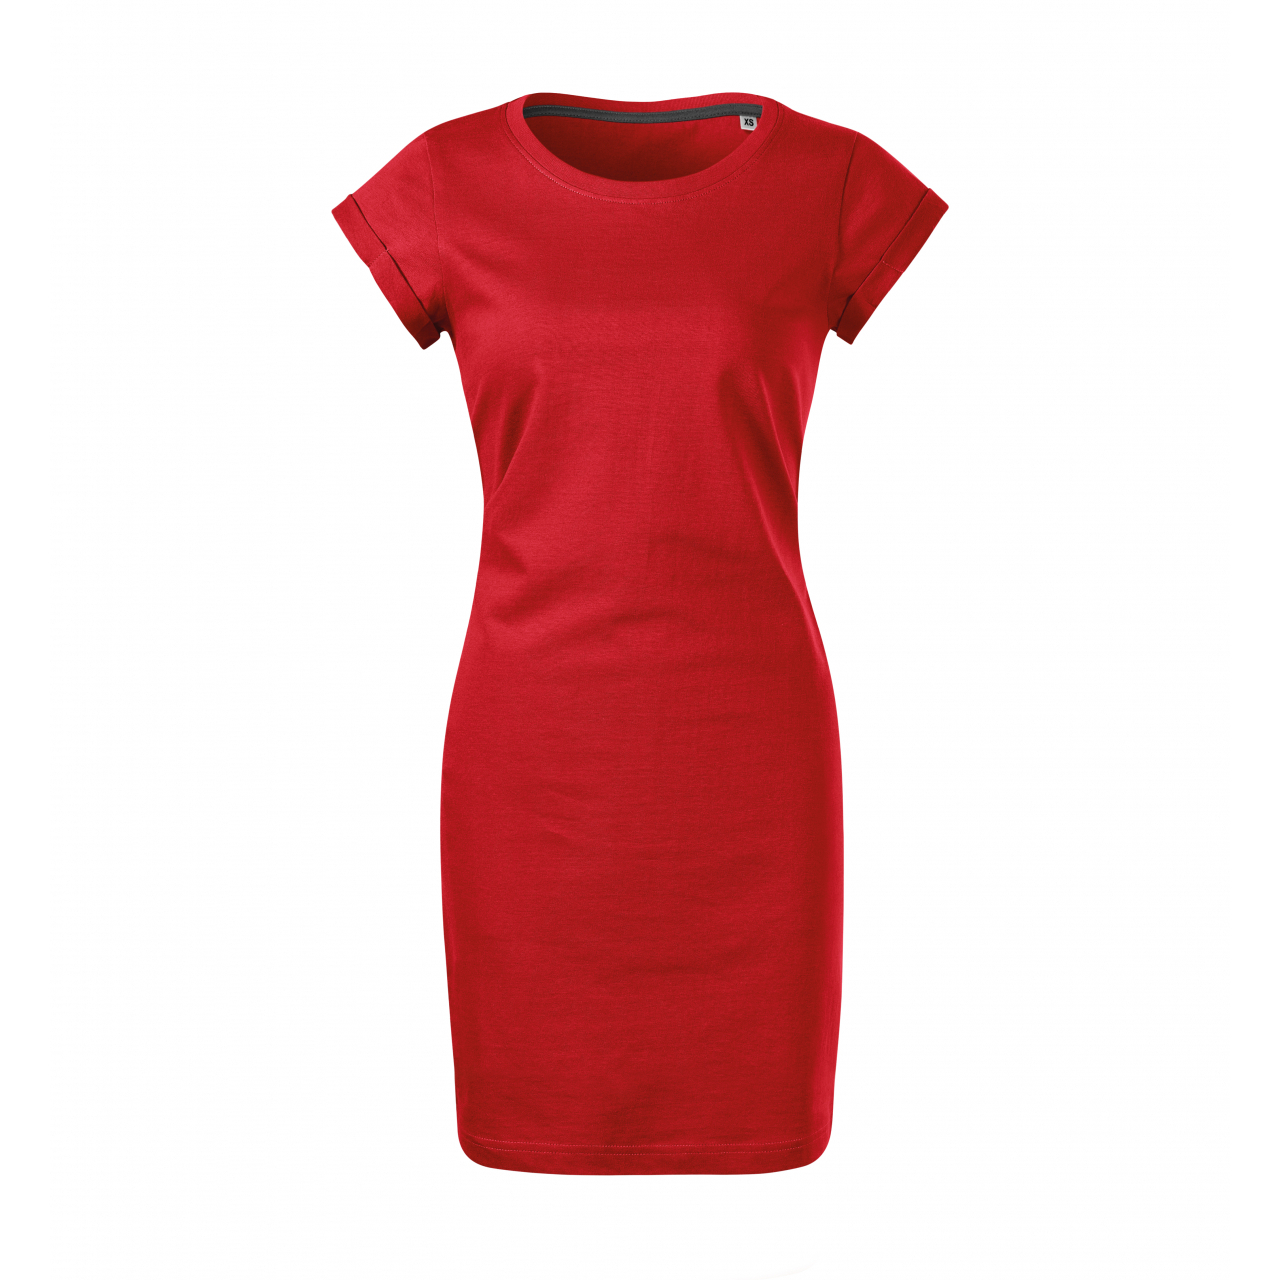 Šaty dámské Malfini Freedom - červené, XS